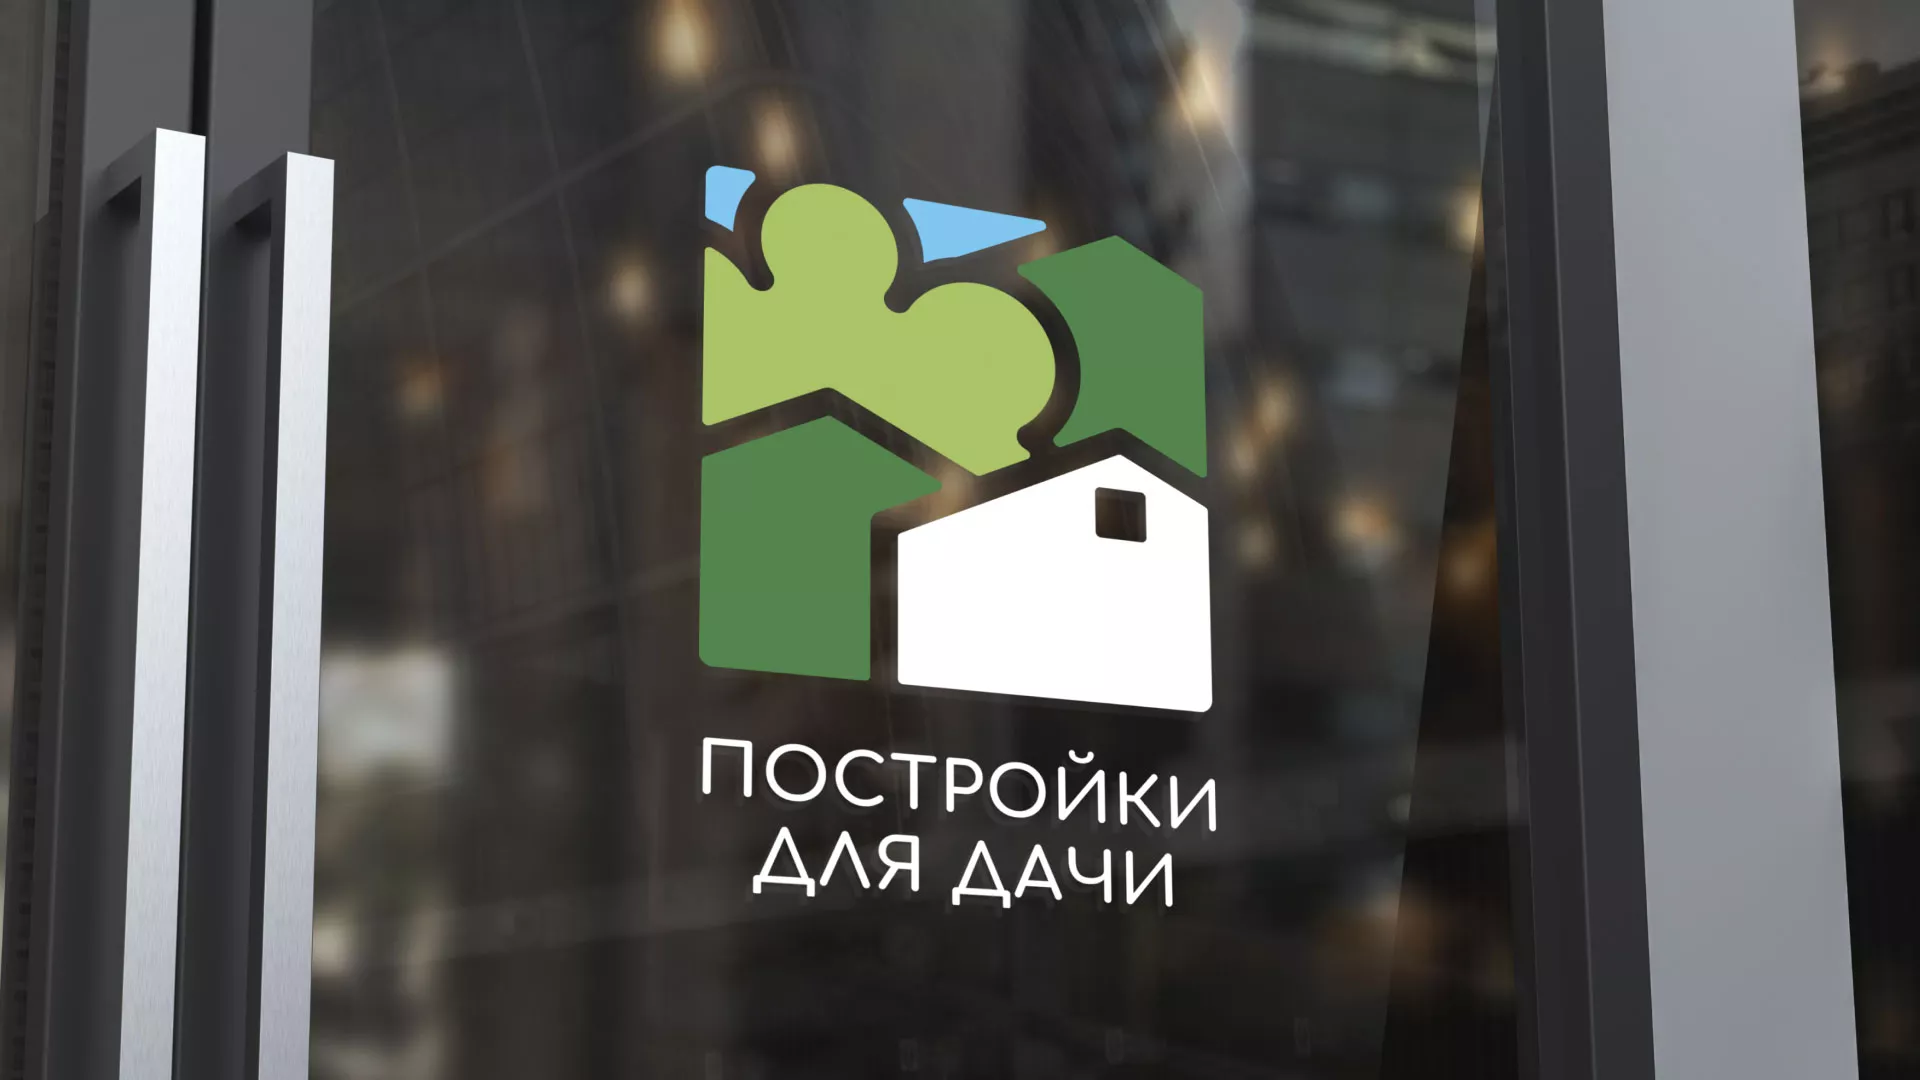 Разработка логотипа в Высоковске для компании «Постройки для дачи»